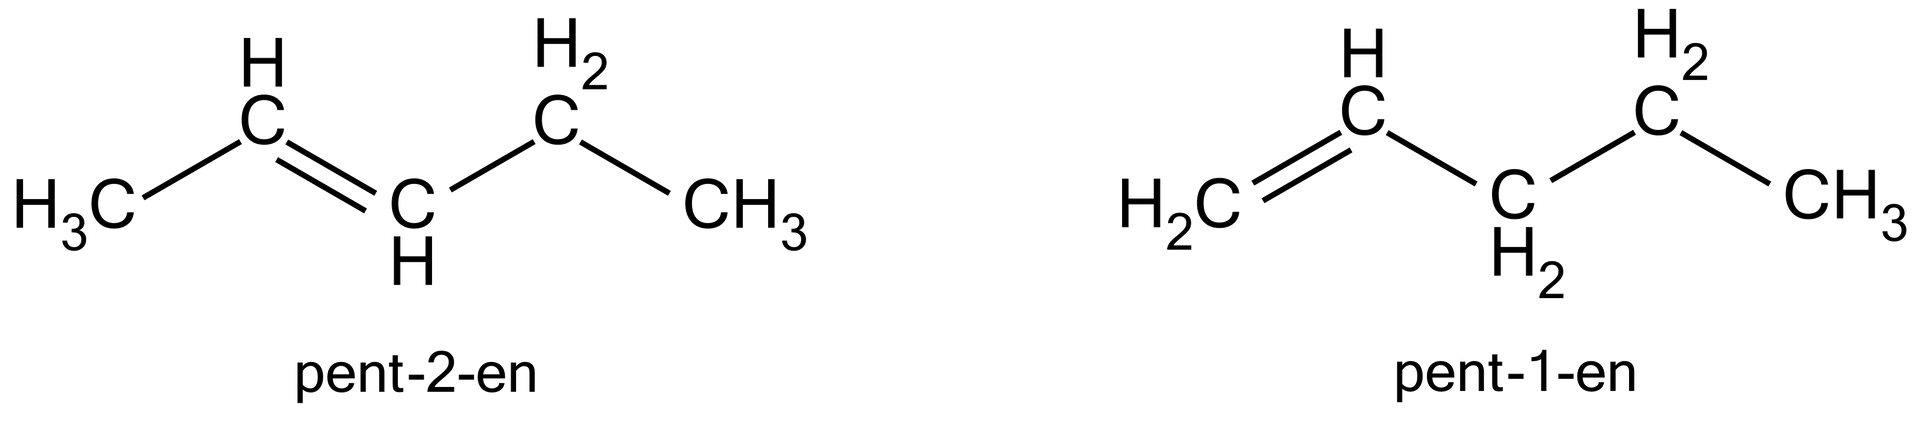 Na ilustracji są wzory półstrukturalne pent-2-enu i pent-1-enu. Wzór pent-2-enu: od lewej grupa metylowa łączy się wiązaniem pojedynczym z grupą CH, ta łączy się wiązaniem podwójnym w grupą CH. Grupa CH łączy się wiązaniem pojedynczym z grupą metylową, a ta z kolei z grupą metylenową. Łańcuch tworzy zygzak. Wzór pent-1-enu: od lewej grupa metylenowa łączy się wiązaniem podwójnym z grupą CH, ta łączy się wiązaniem pojedynczym z grupą metylenową. Grupa metylenowa łączy się wiązaniem pojedynczym z grupą metylenową, która łączy się wiązaniem pojedynczym z grupą metylową. Łańcuch tworzy zygzak. 